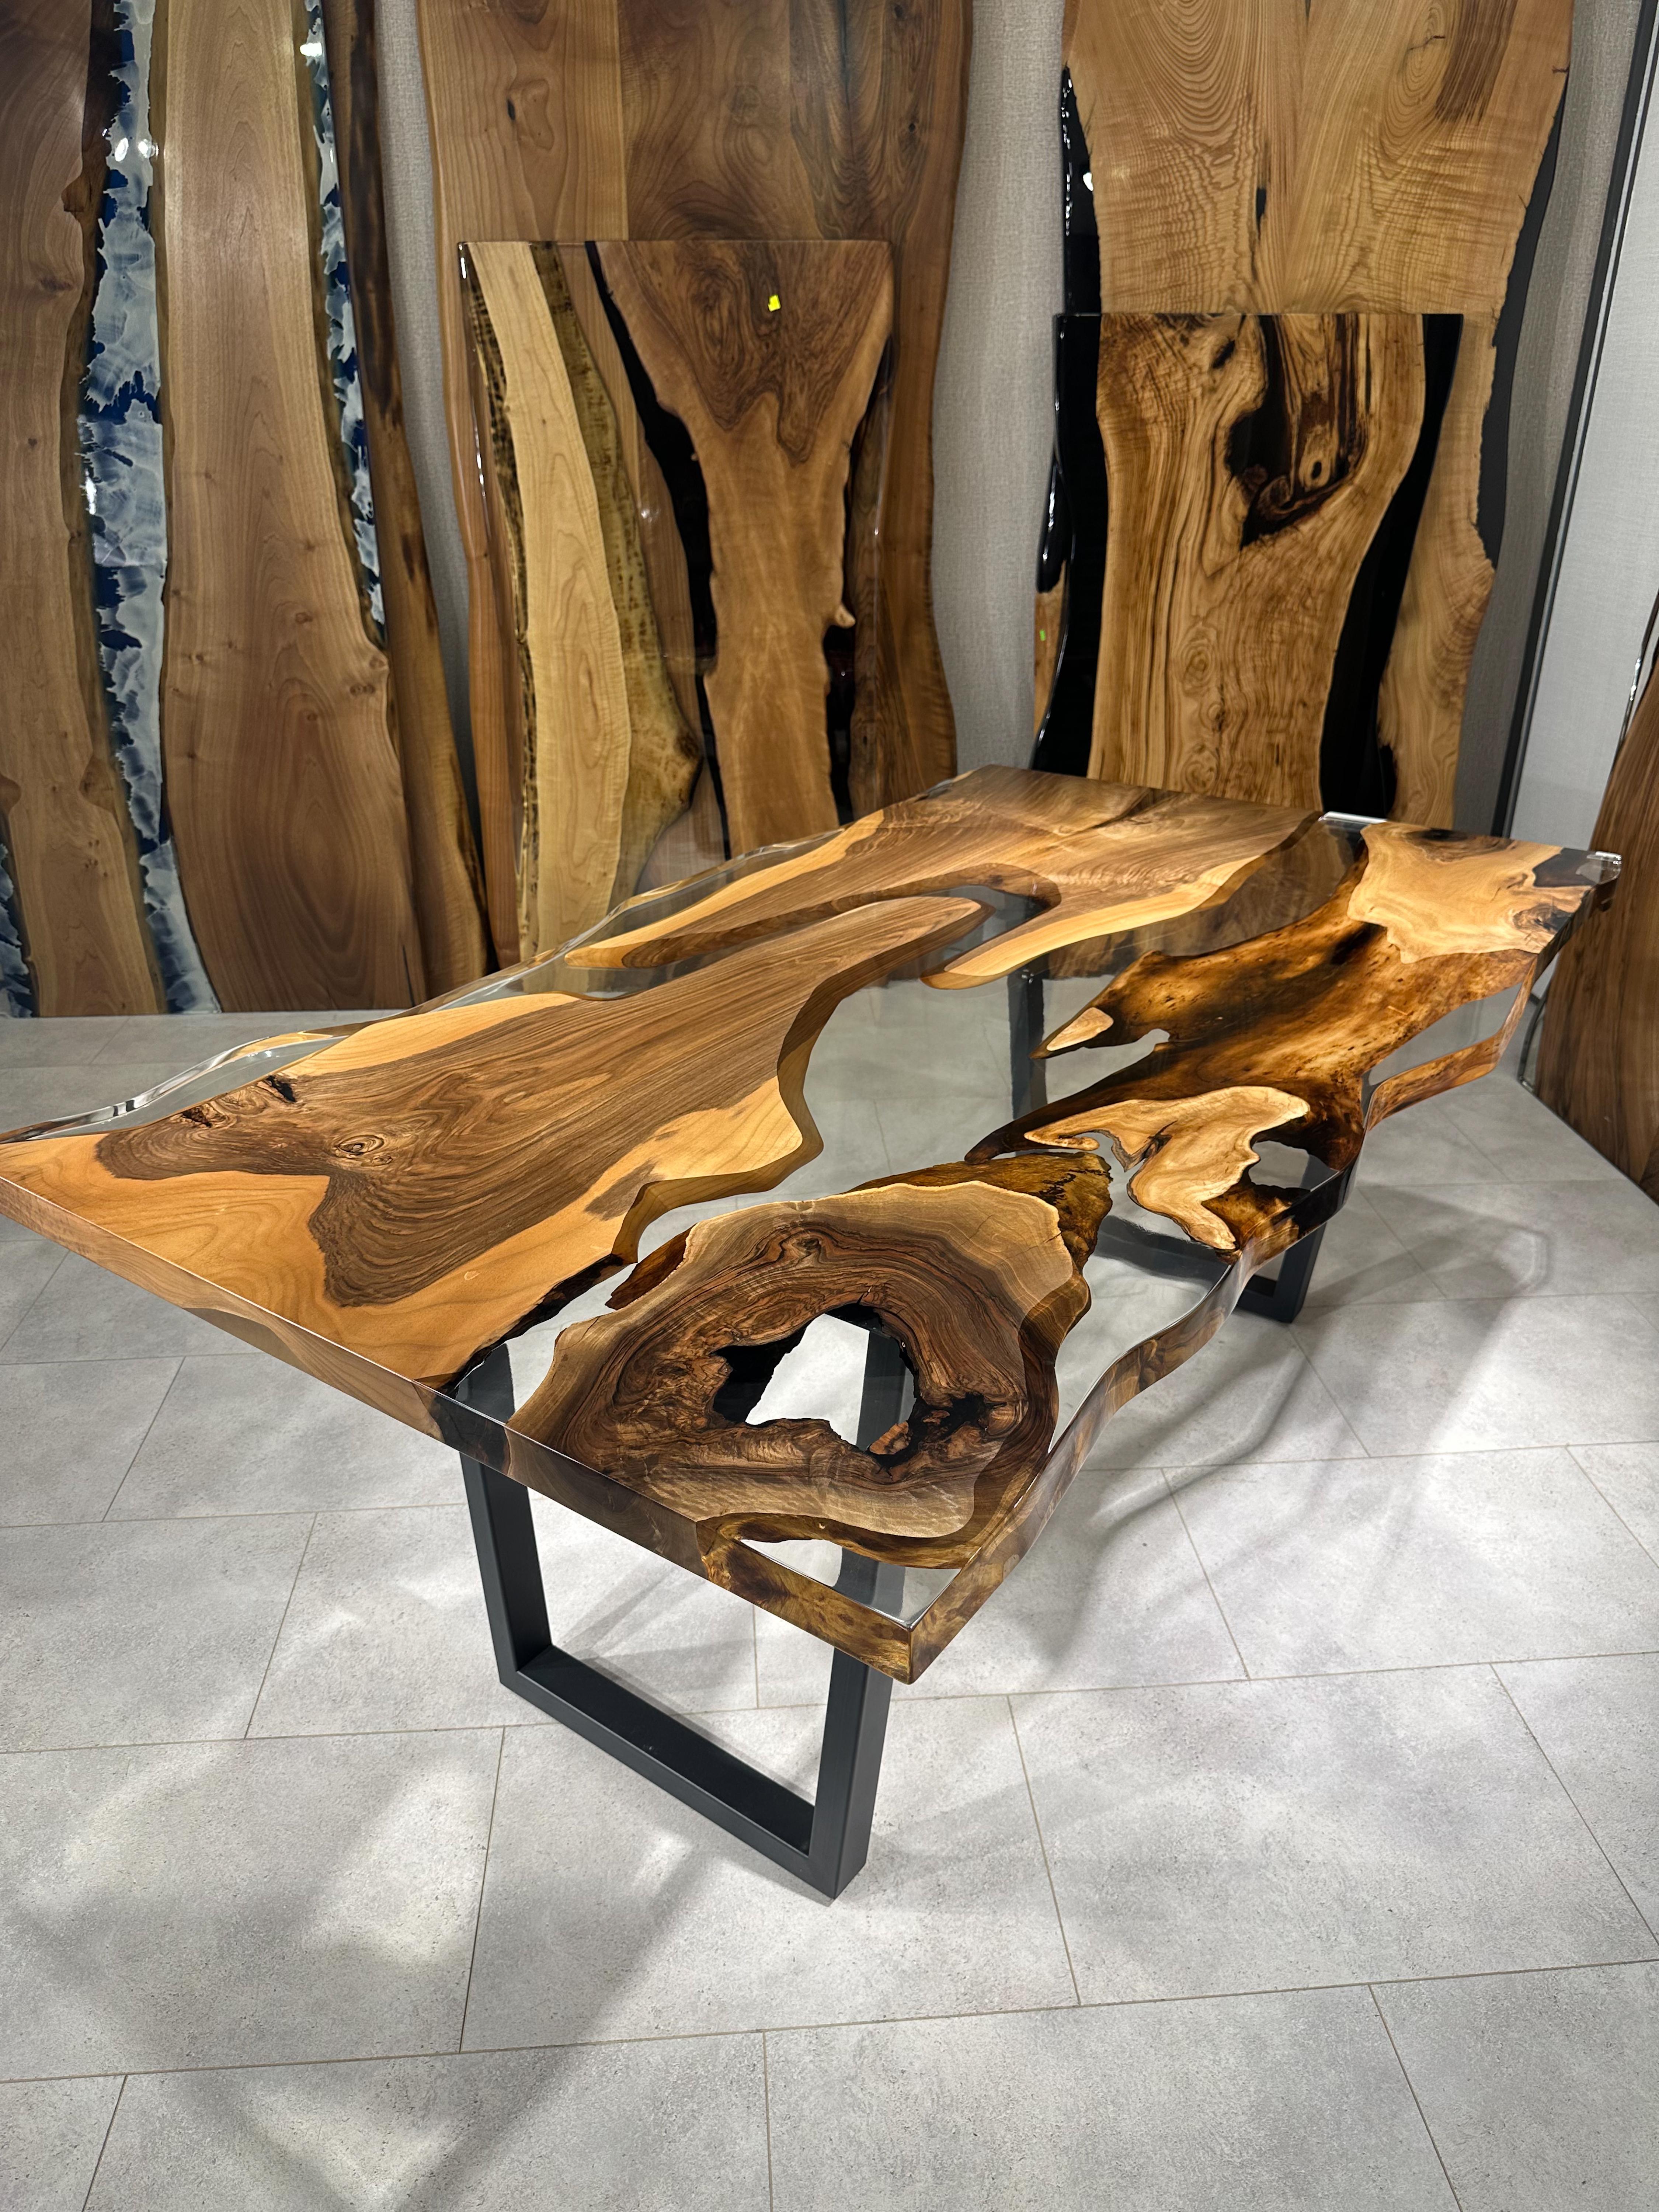 Table de salle à manger en résine époxy claire sur mesure en noyer 

Cette table est fabriquée en bois de noyer vieux de 500 ans. Les veines et la texture du bois décrivent l'aspect d'un bois de noyer naturel.
Elle peut être utilisée comme table de